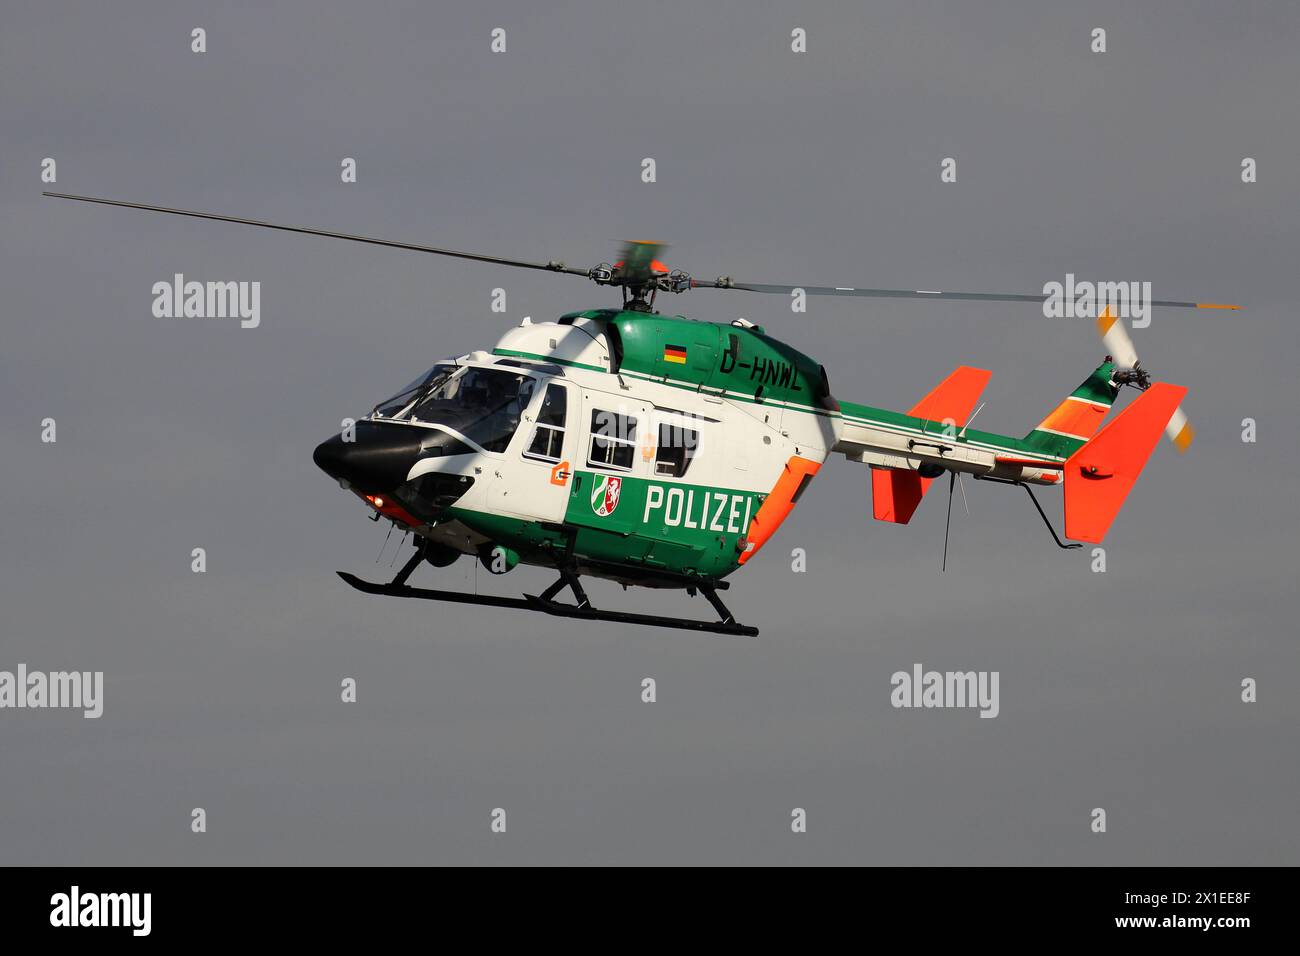 Hélicoptère MBB BK 117 de la police allemande de Rhénanie du Nord-Westphalie immatriculé d-HNWL en patrouille Banque D'Images